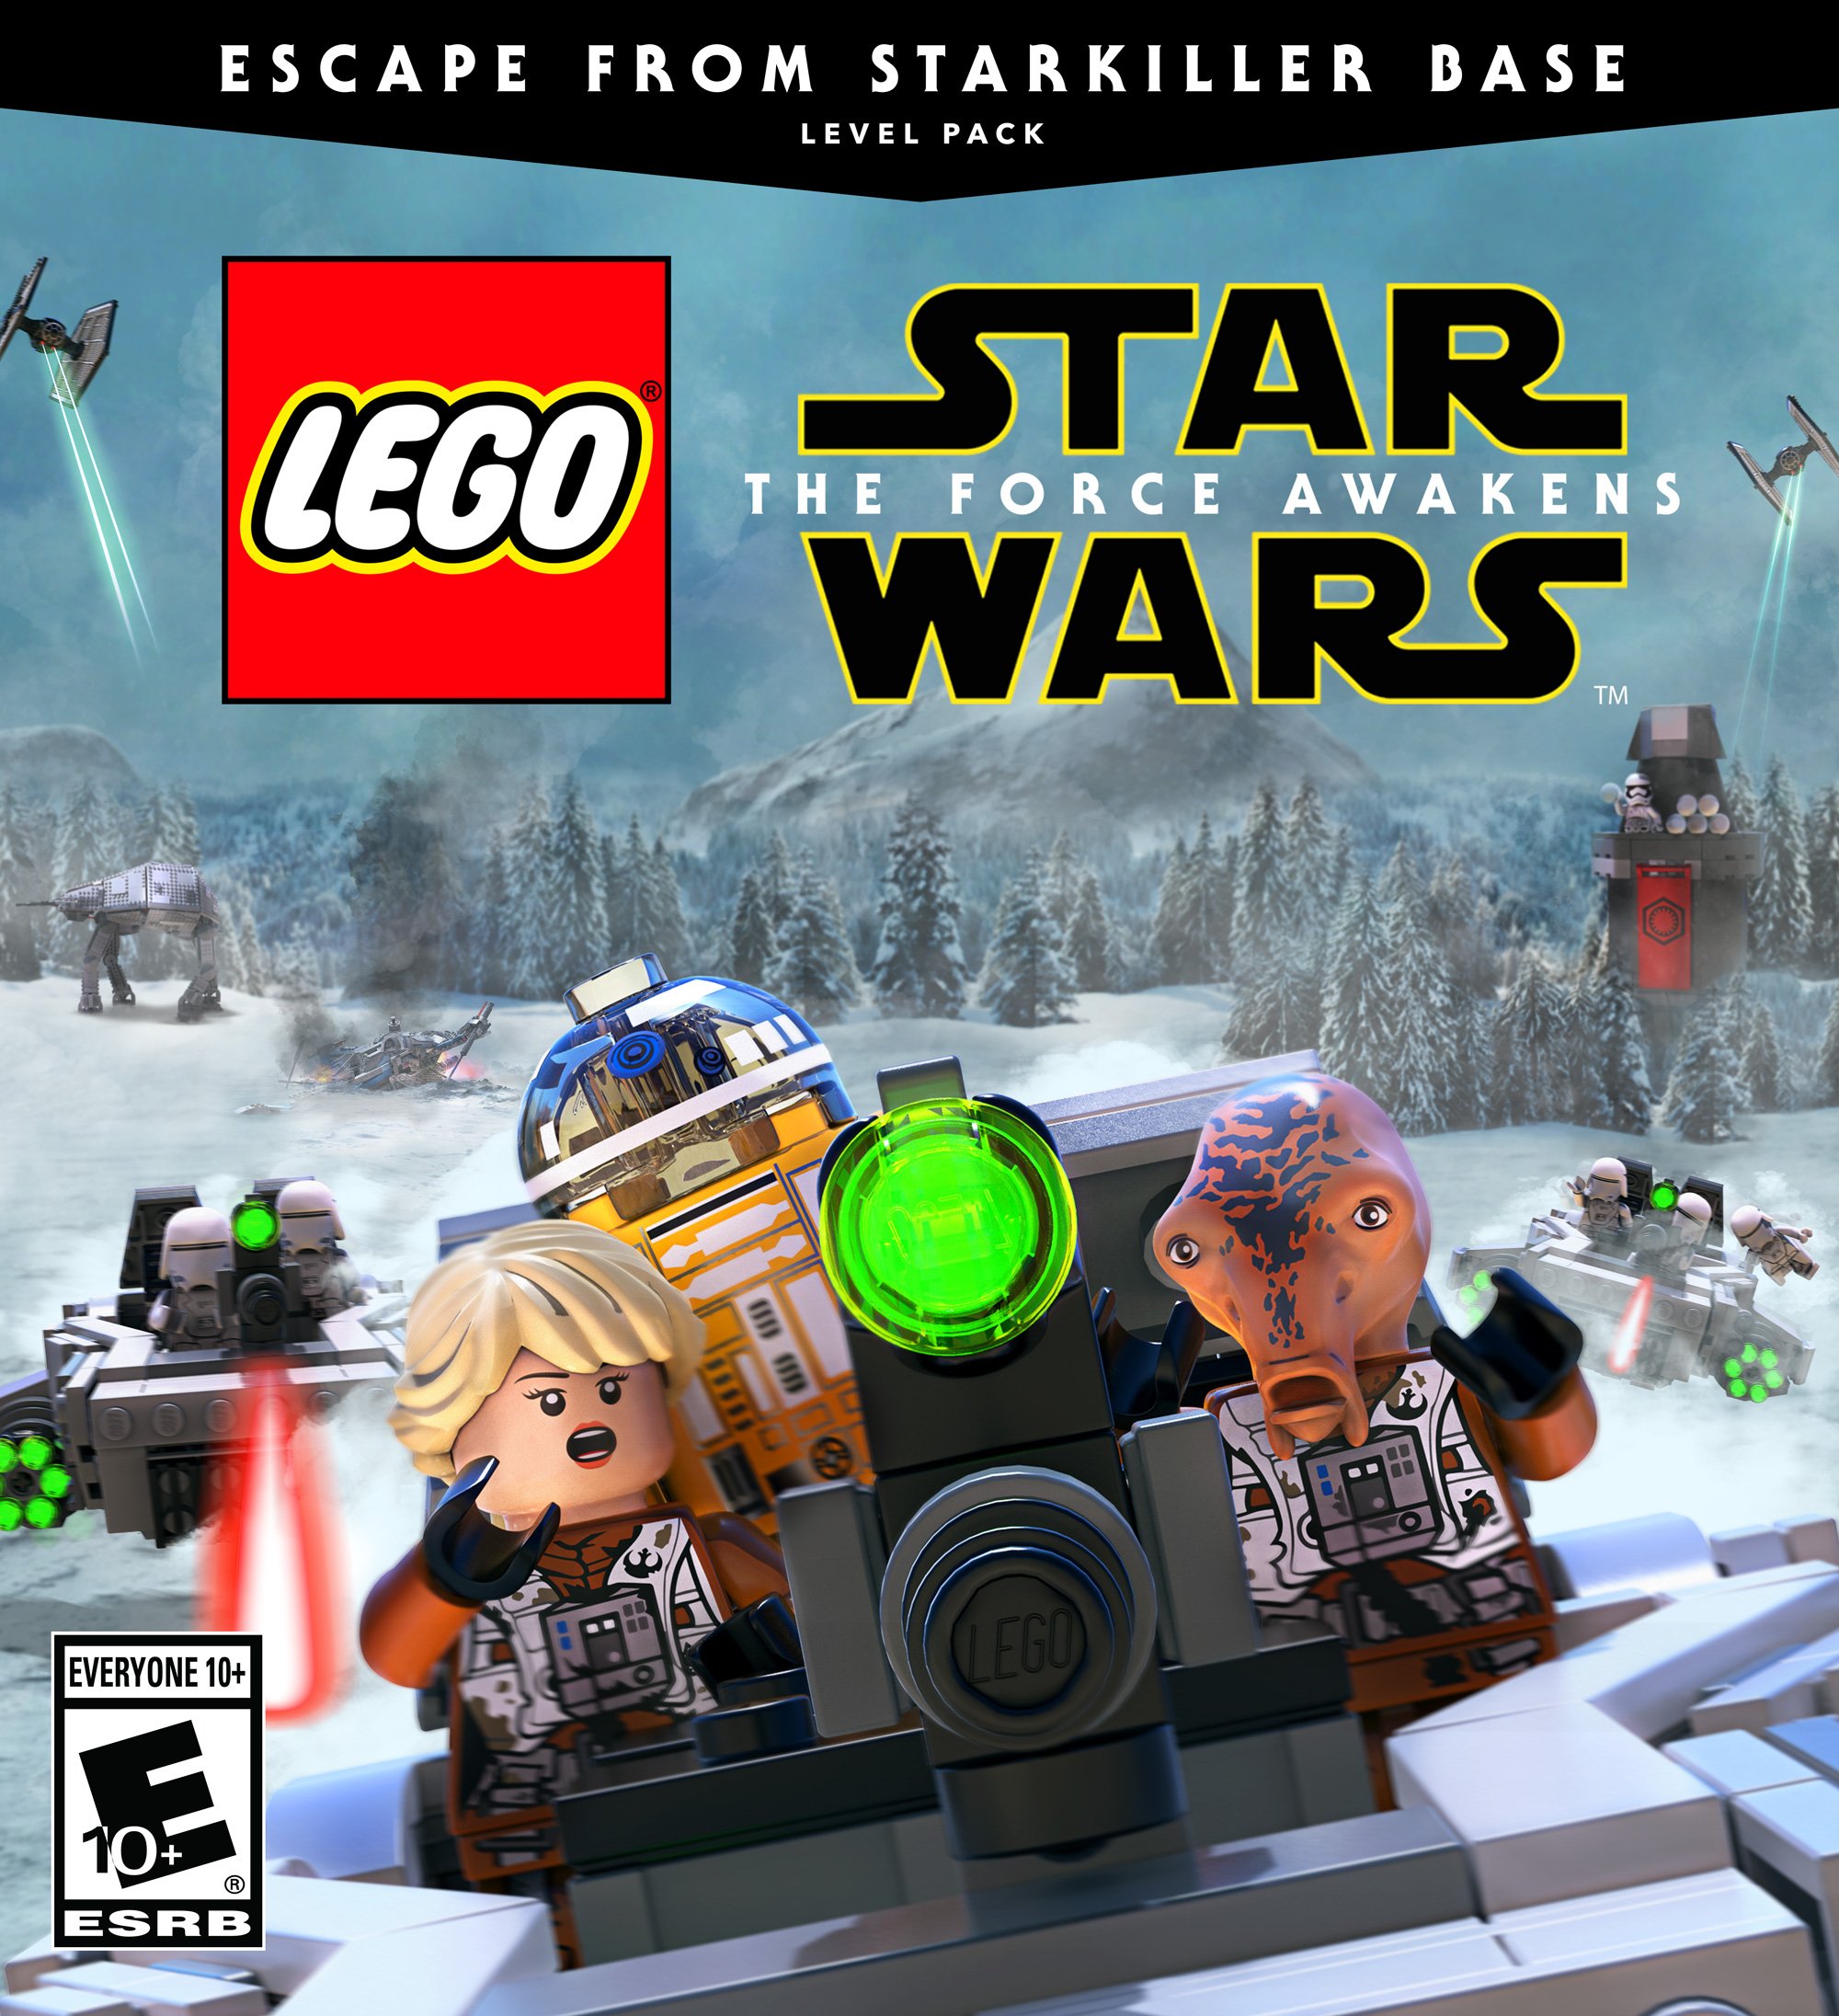 Ο LEGO Star Wars Game "Let's get off this thing before it explodes! Play new Level Pack DLC for LEGO Star Wars: The Force Awakens, available now! https://t.co/PuXeQTHUve" /